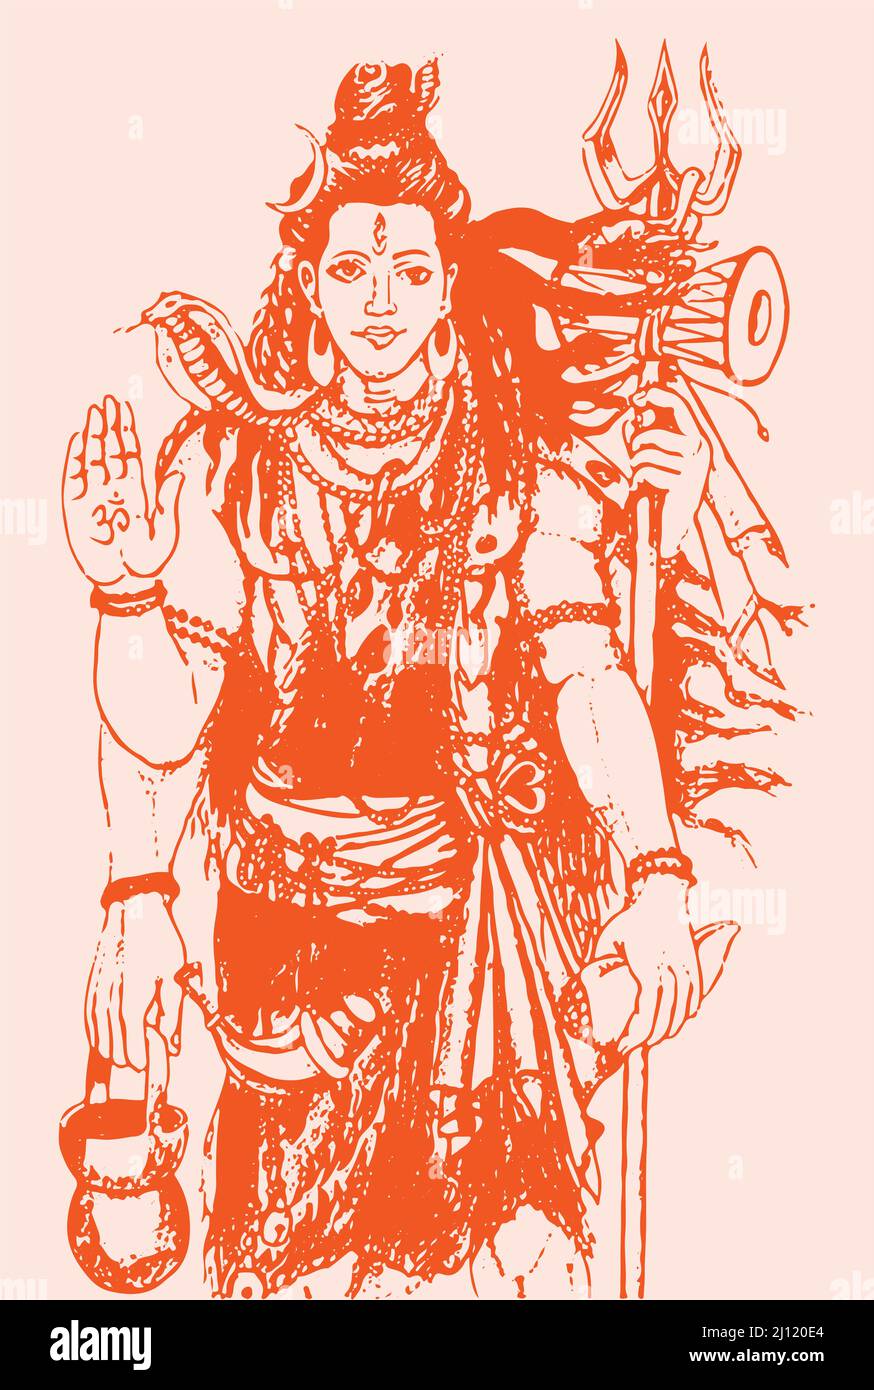 Disegno illustrato di t Lord Shiva di colore arancione su sfondo arancione chiaro Foto Stock